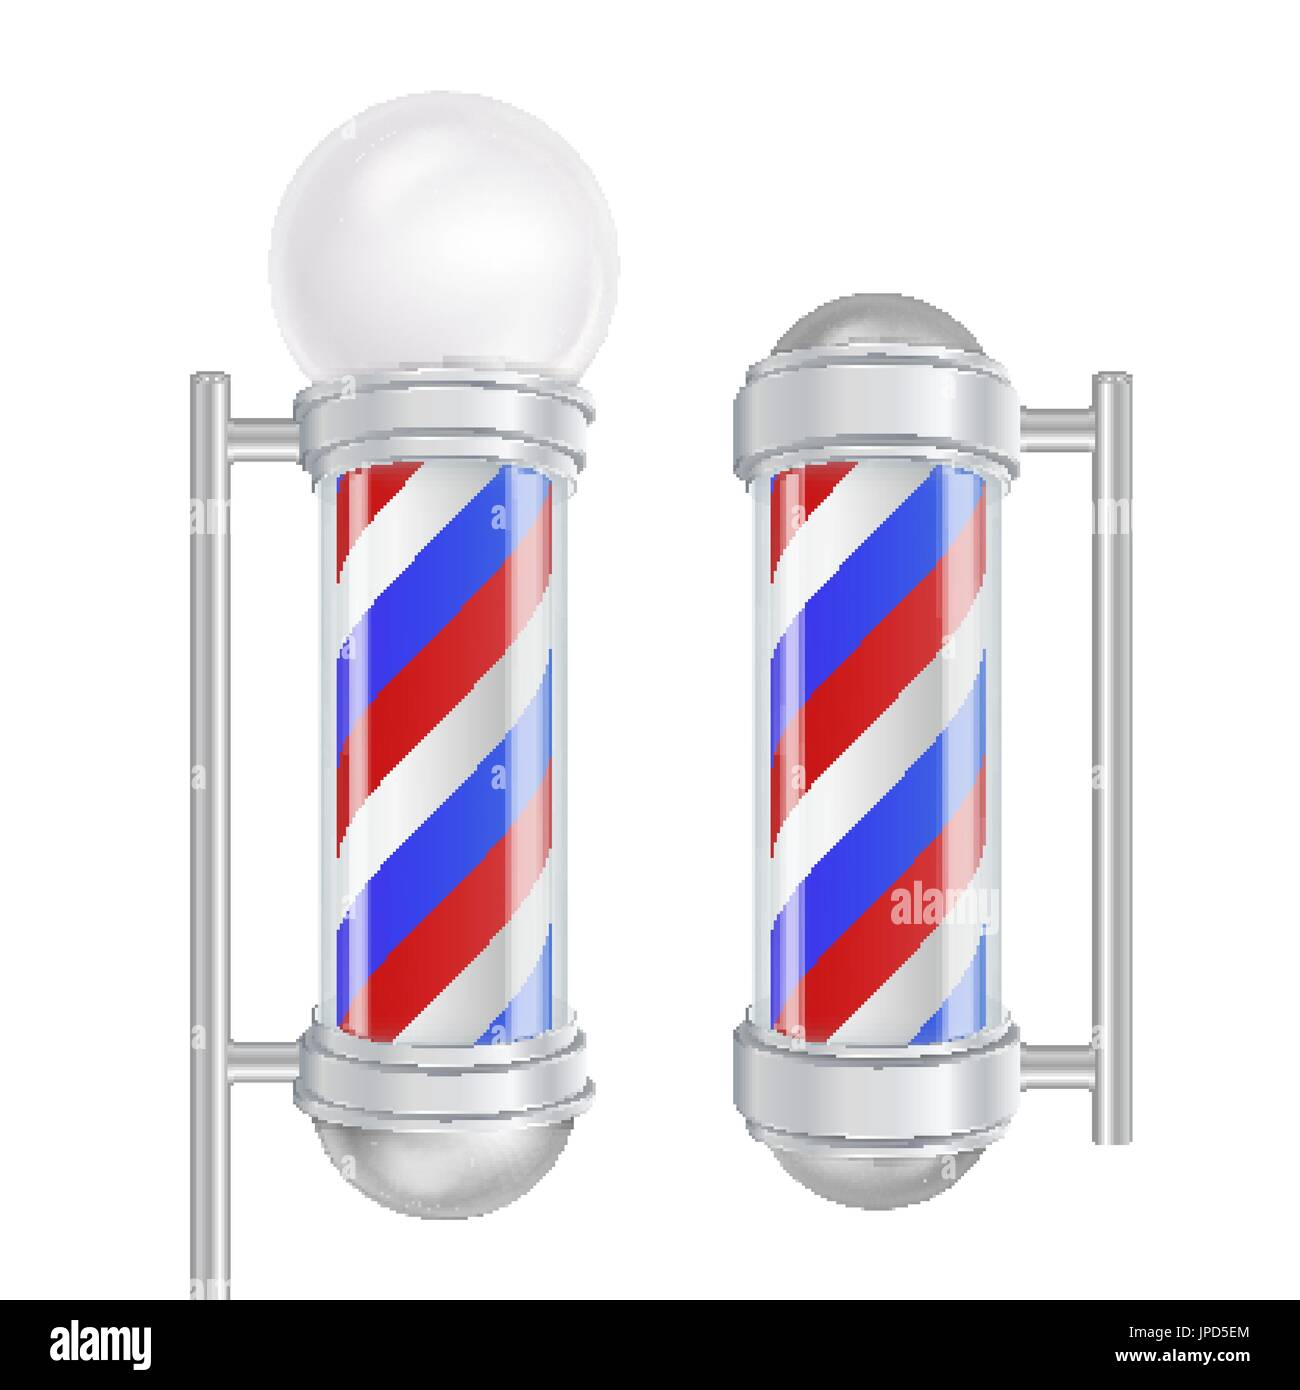 Barber Shop Pole Vektor. Rot, blau, weiße Streifen. Gut für Design, Branding, Werbung. Isolierte Illustration Stock Vektor